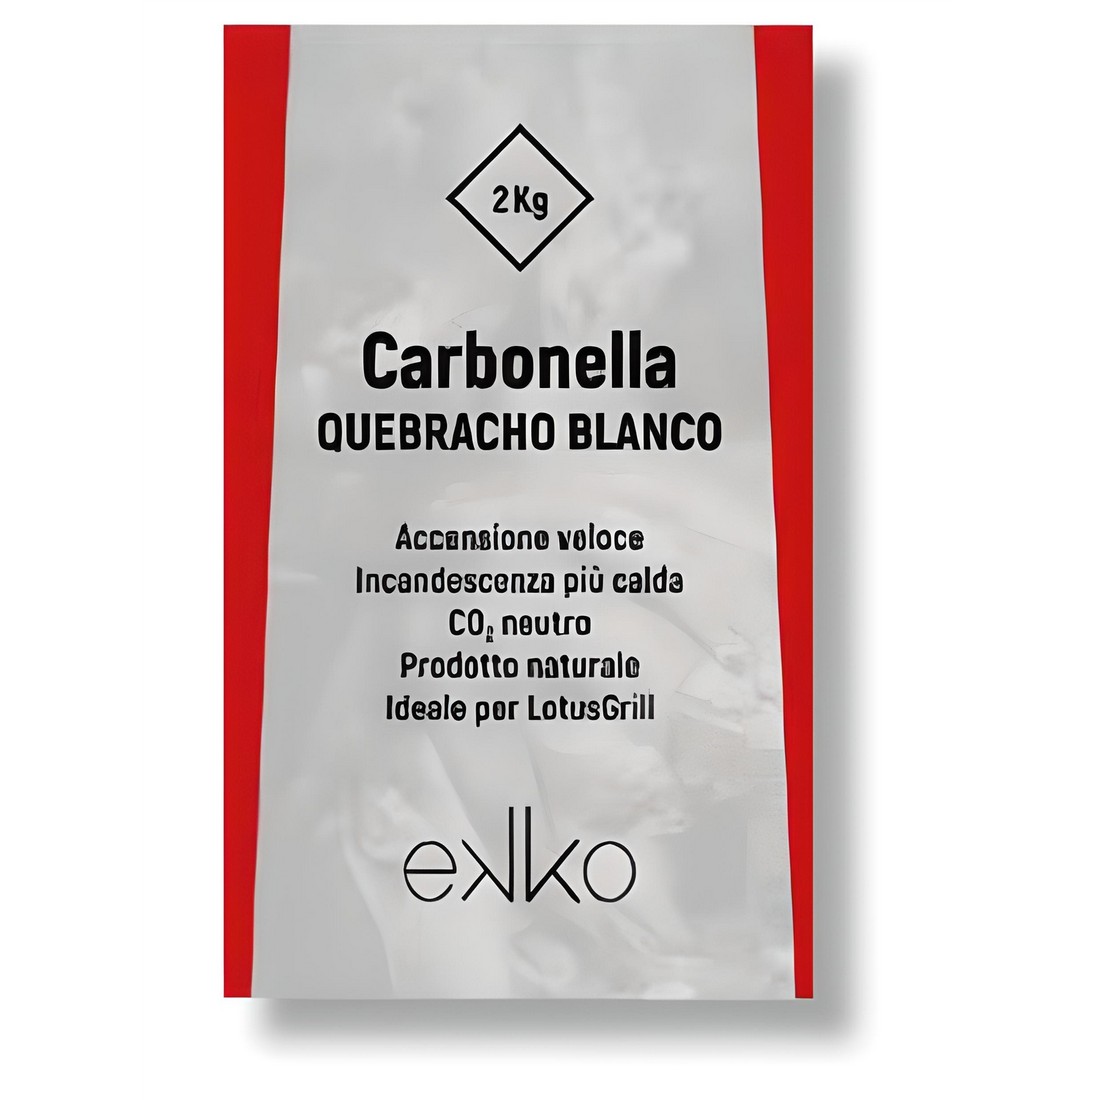 Ekko - Quebracho Blanco charcoal bag 2Kg